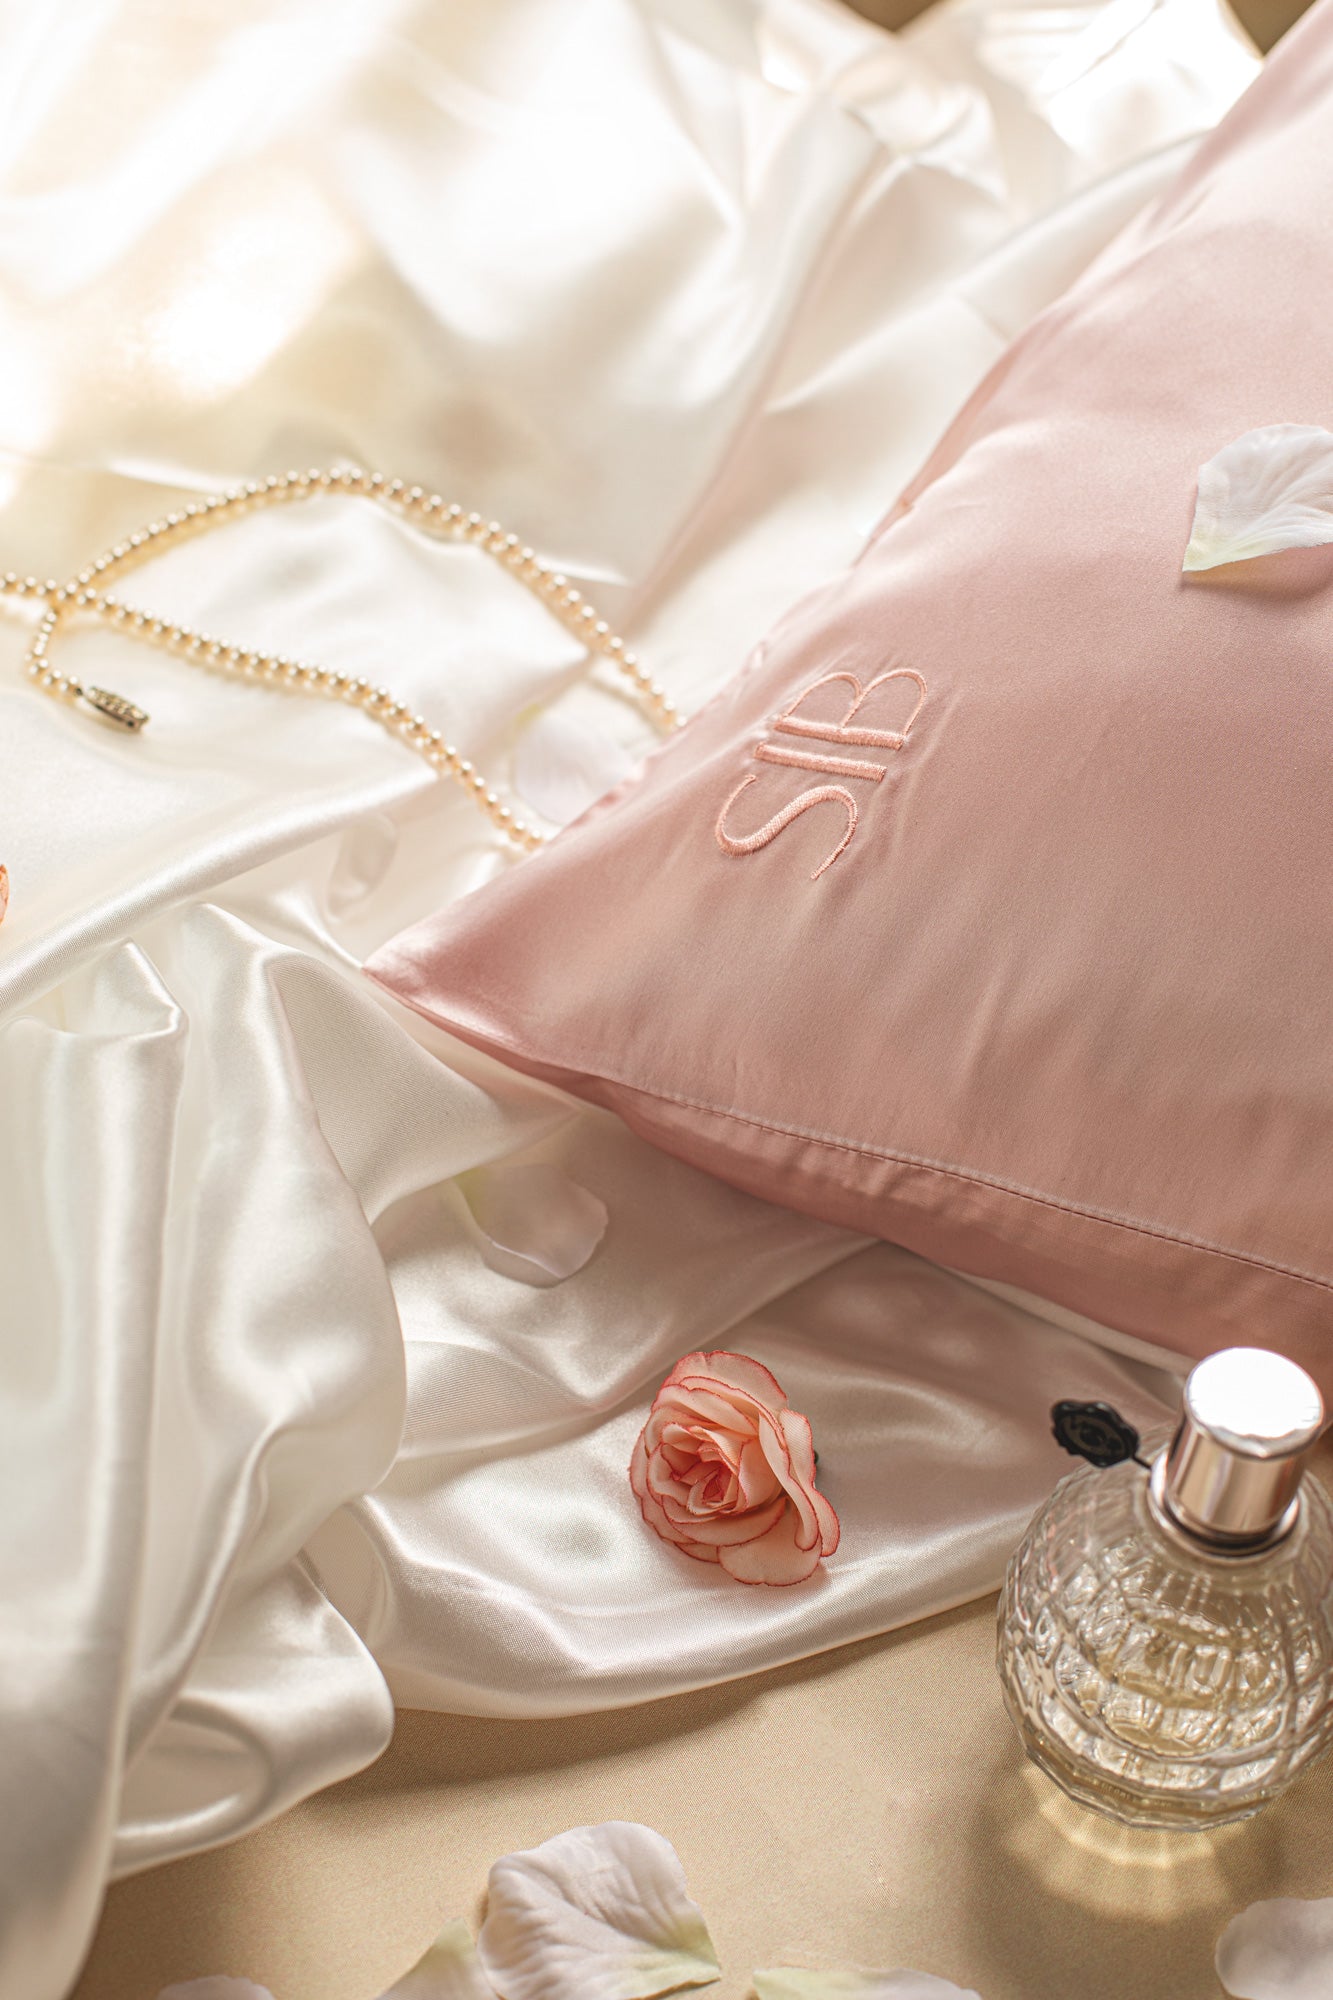 SIB™ Silk Pillowcase